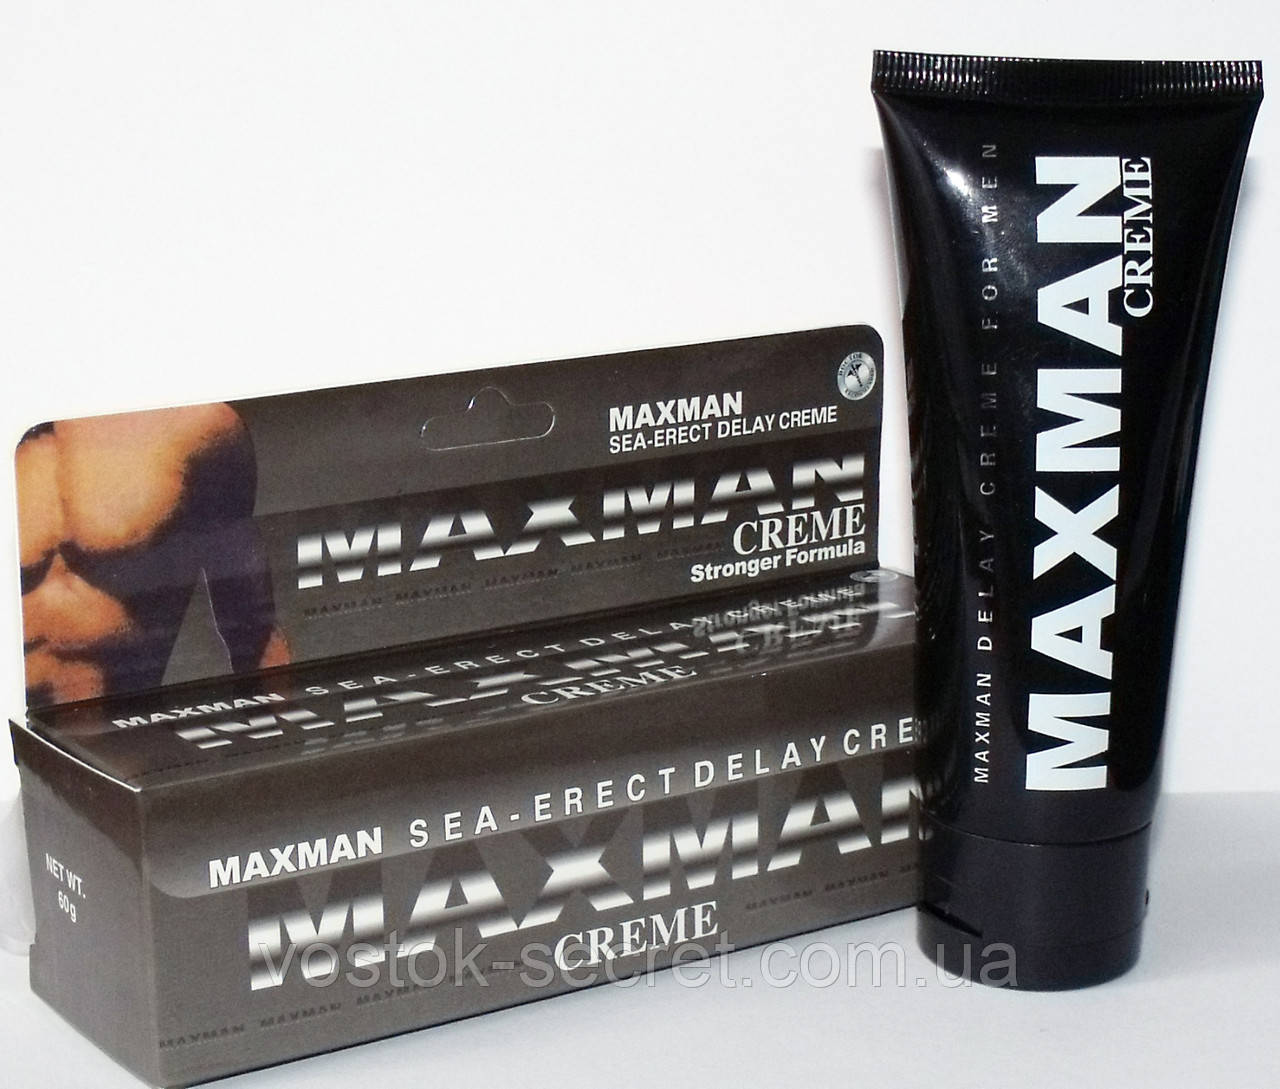 MaxMan Creme крем для продовження статевого акту, 60 мг.